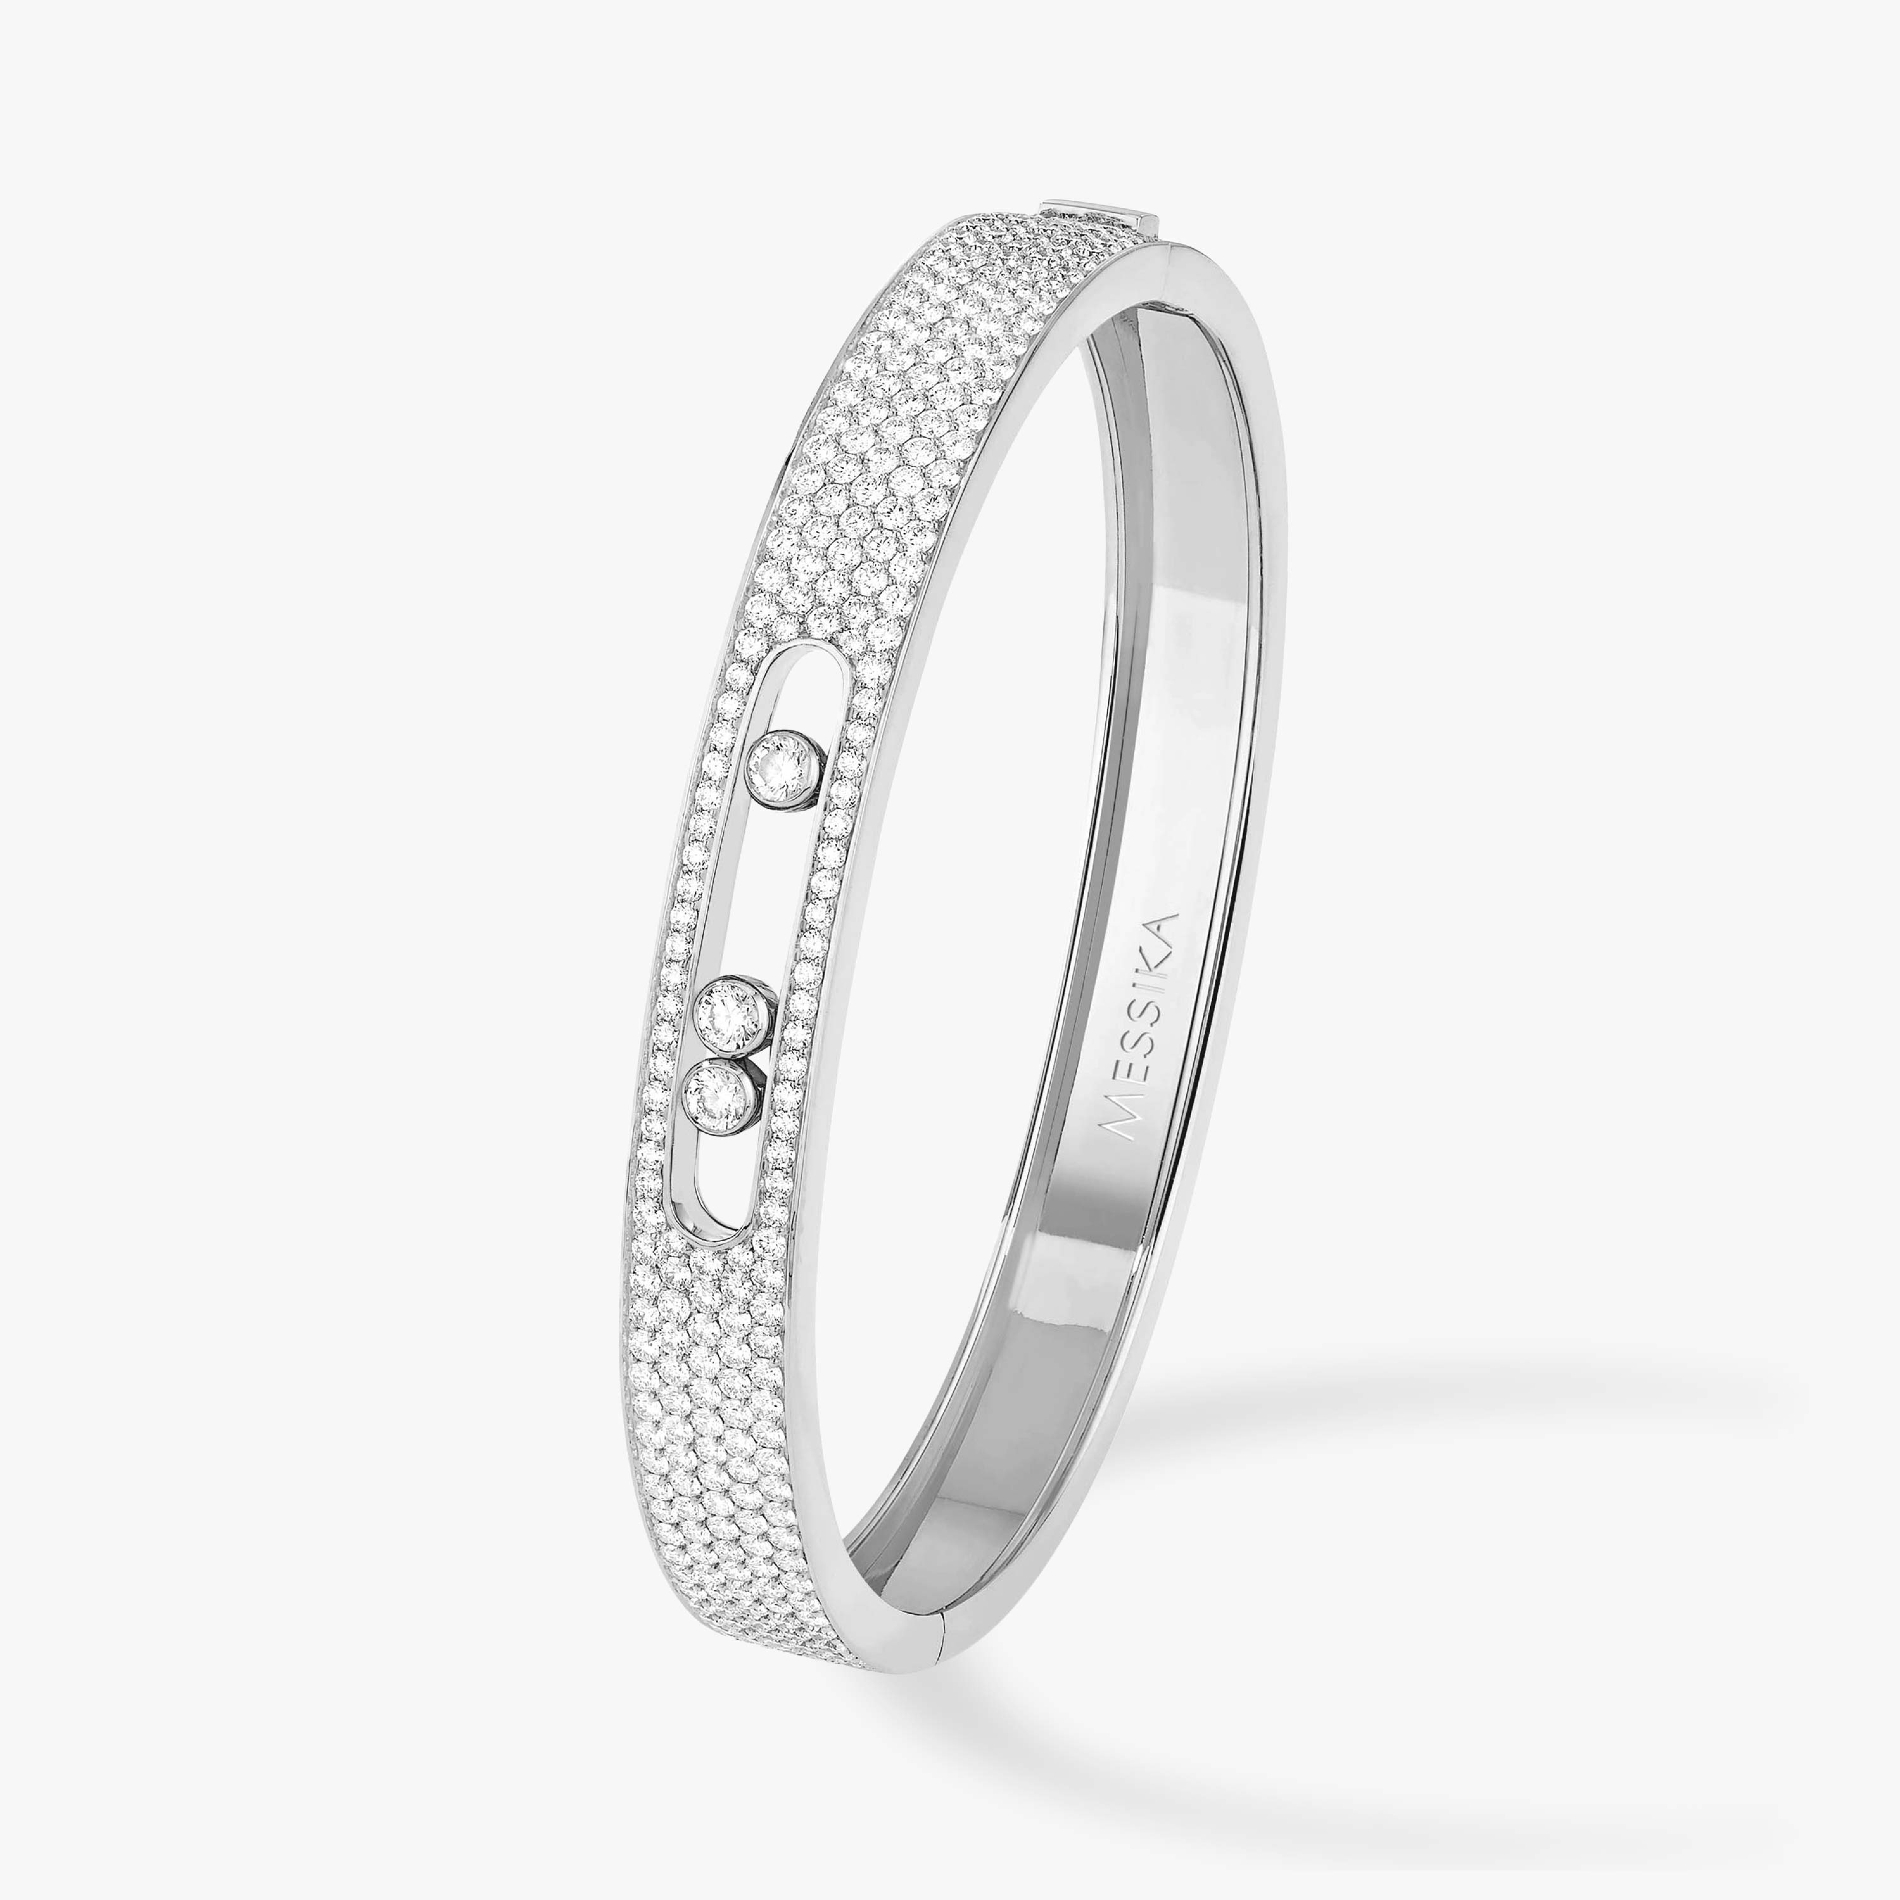 Bangle Move Joaillerie Pavé White Gold For Her Diamond Bracelet 04699-WG